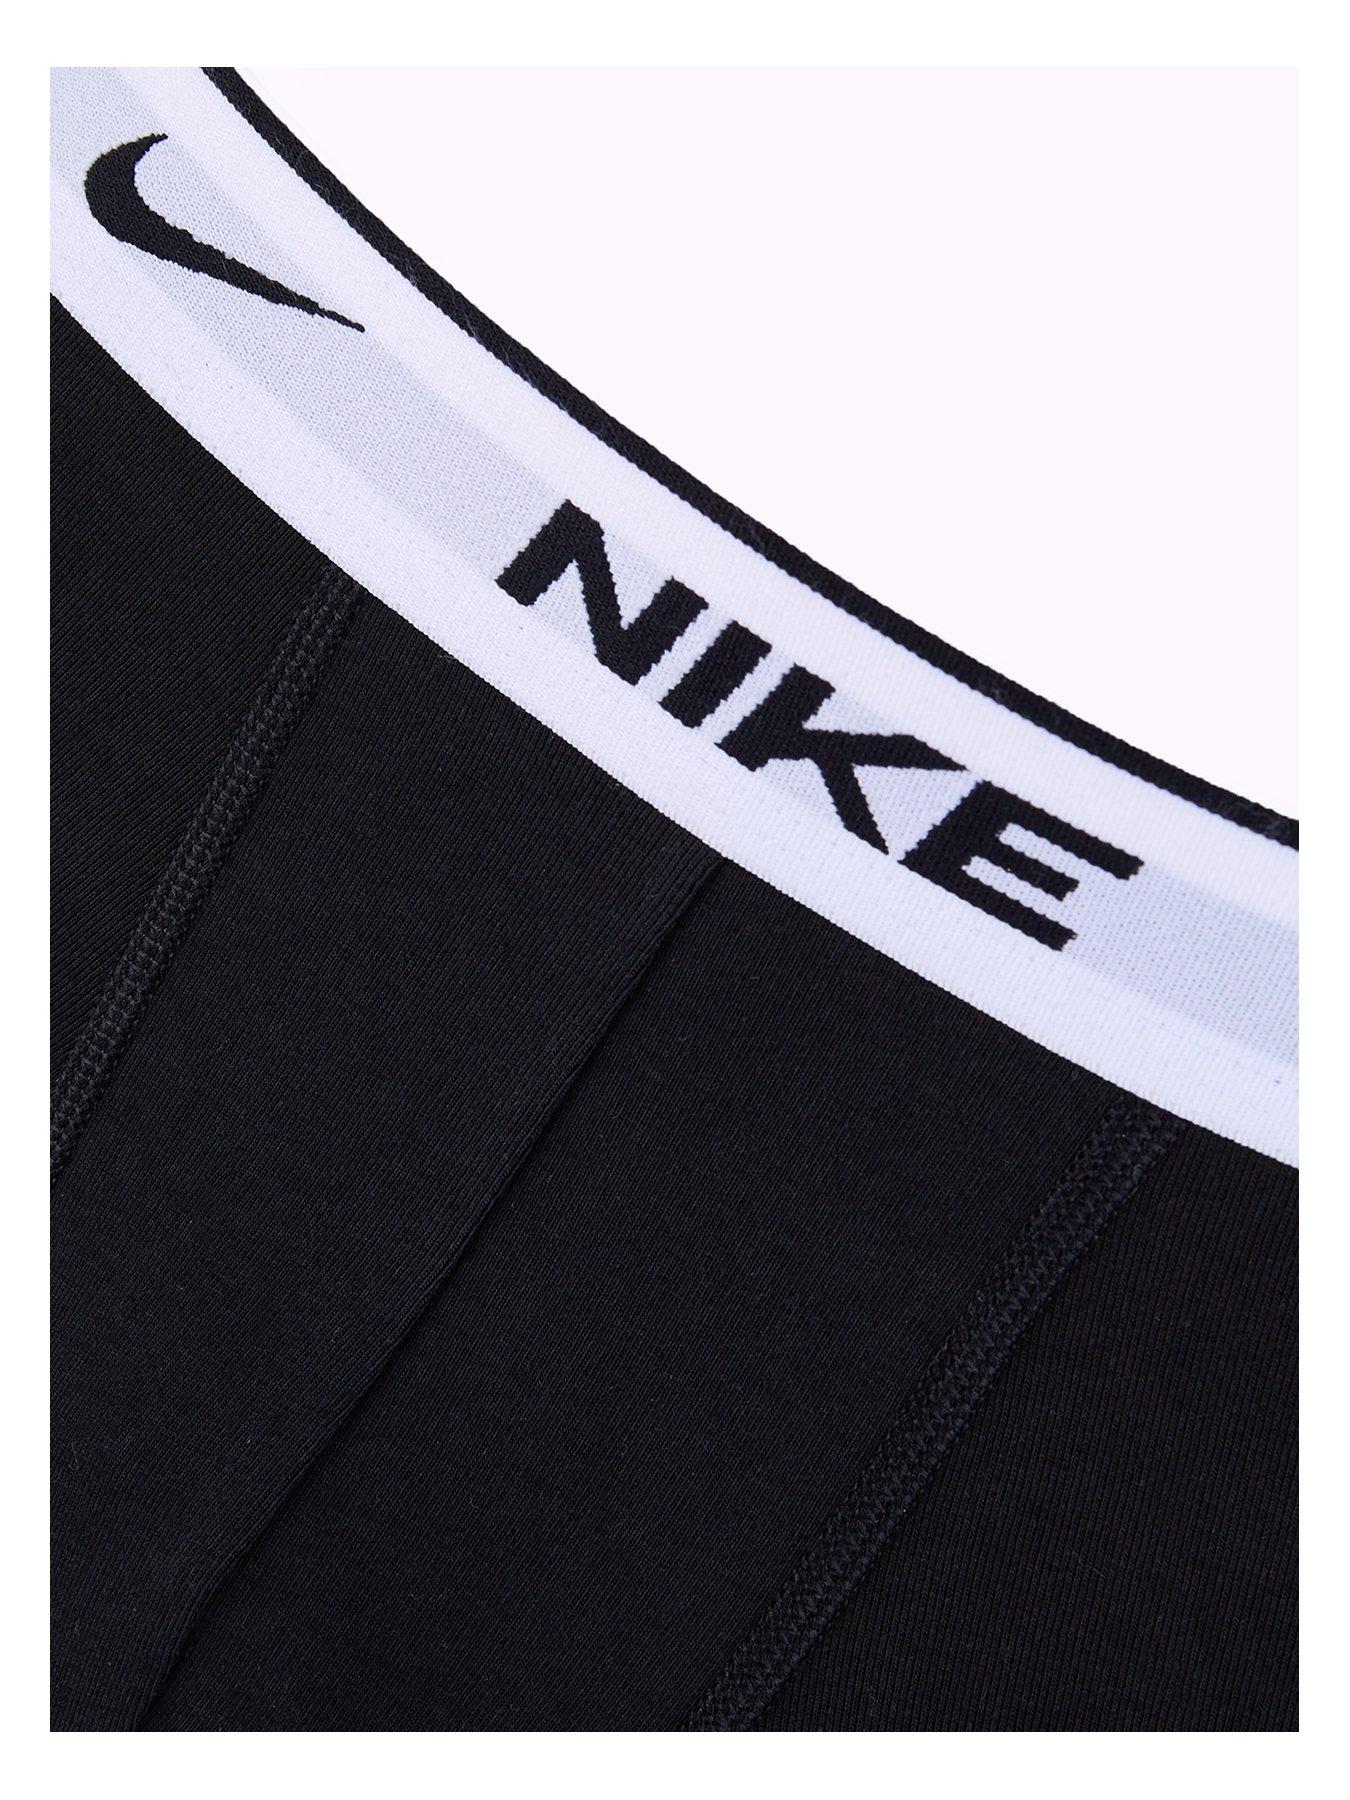 Nike 3 pack cotton stretch briefs in black